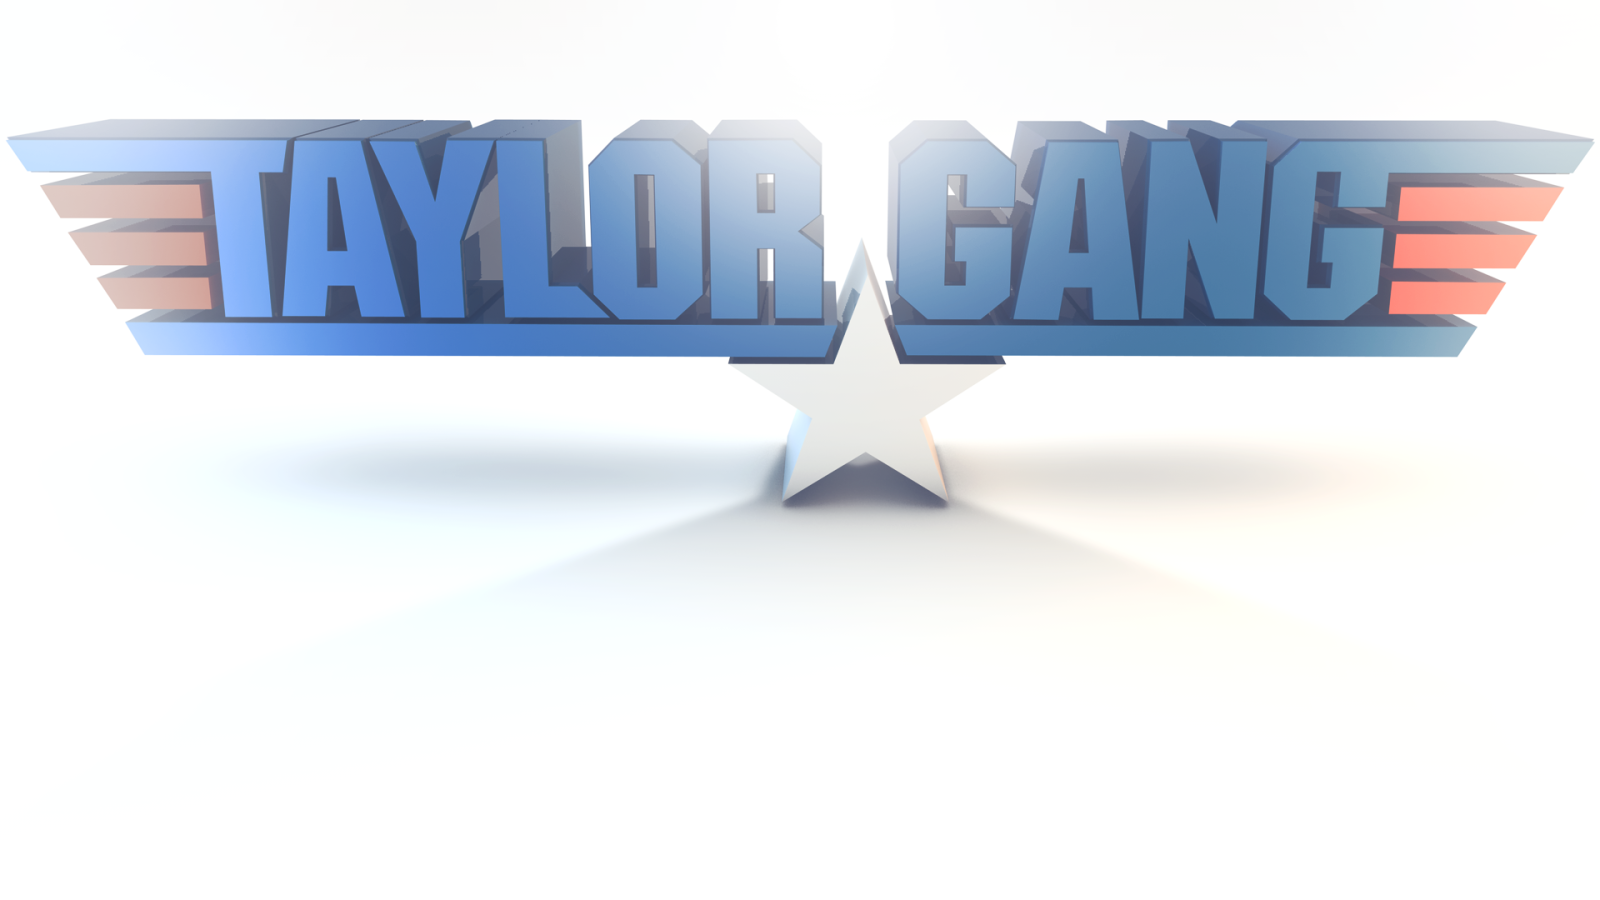 TAYLOR GANG wallpaper [ 720p 1080p ]